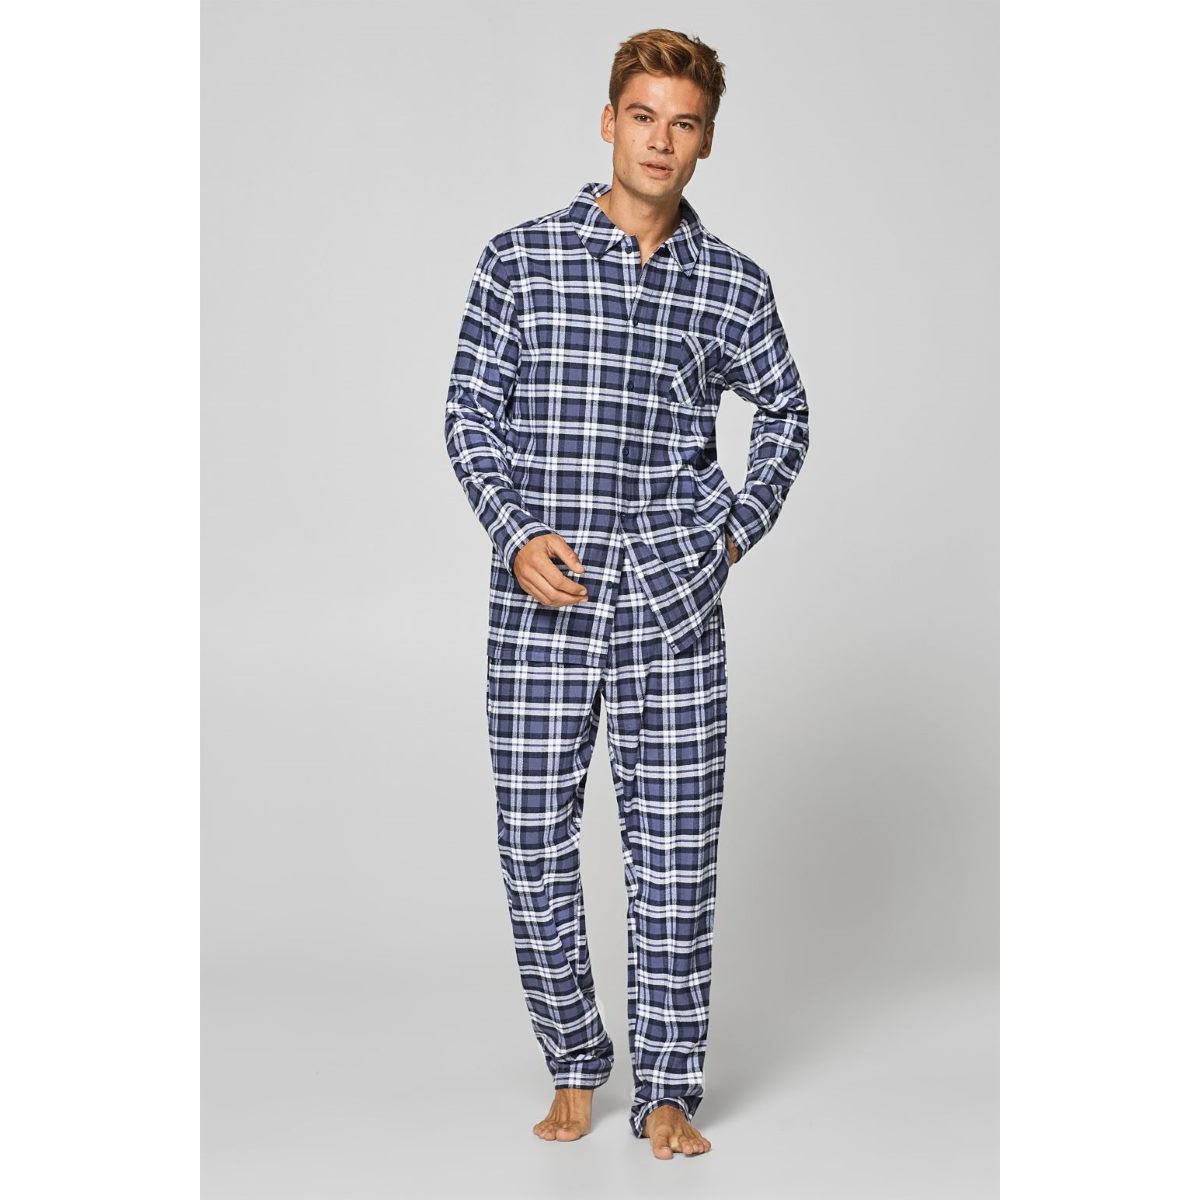 Esprit pyjama geruit | Bestel eenvoudig online | verzending | Snel huis | Online de mooiste pyjama's, nachthemden, ondermode en meer